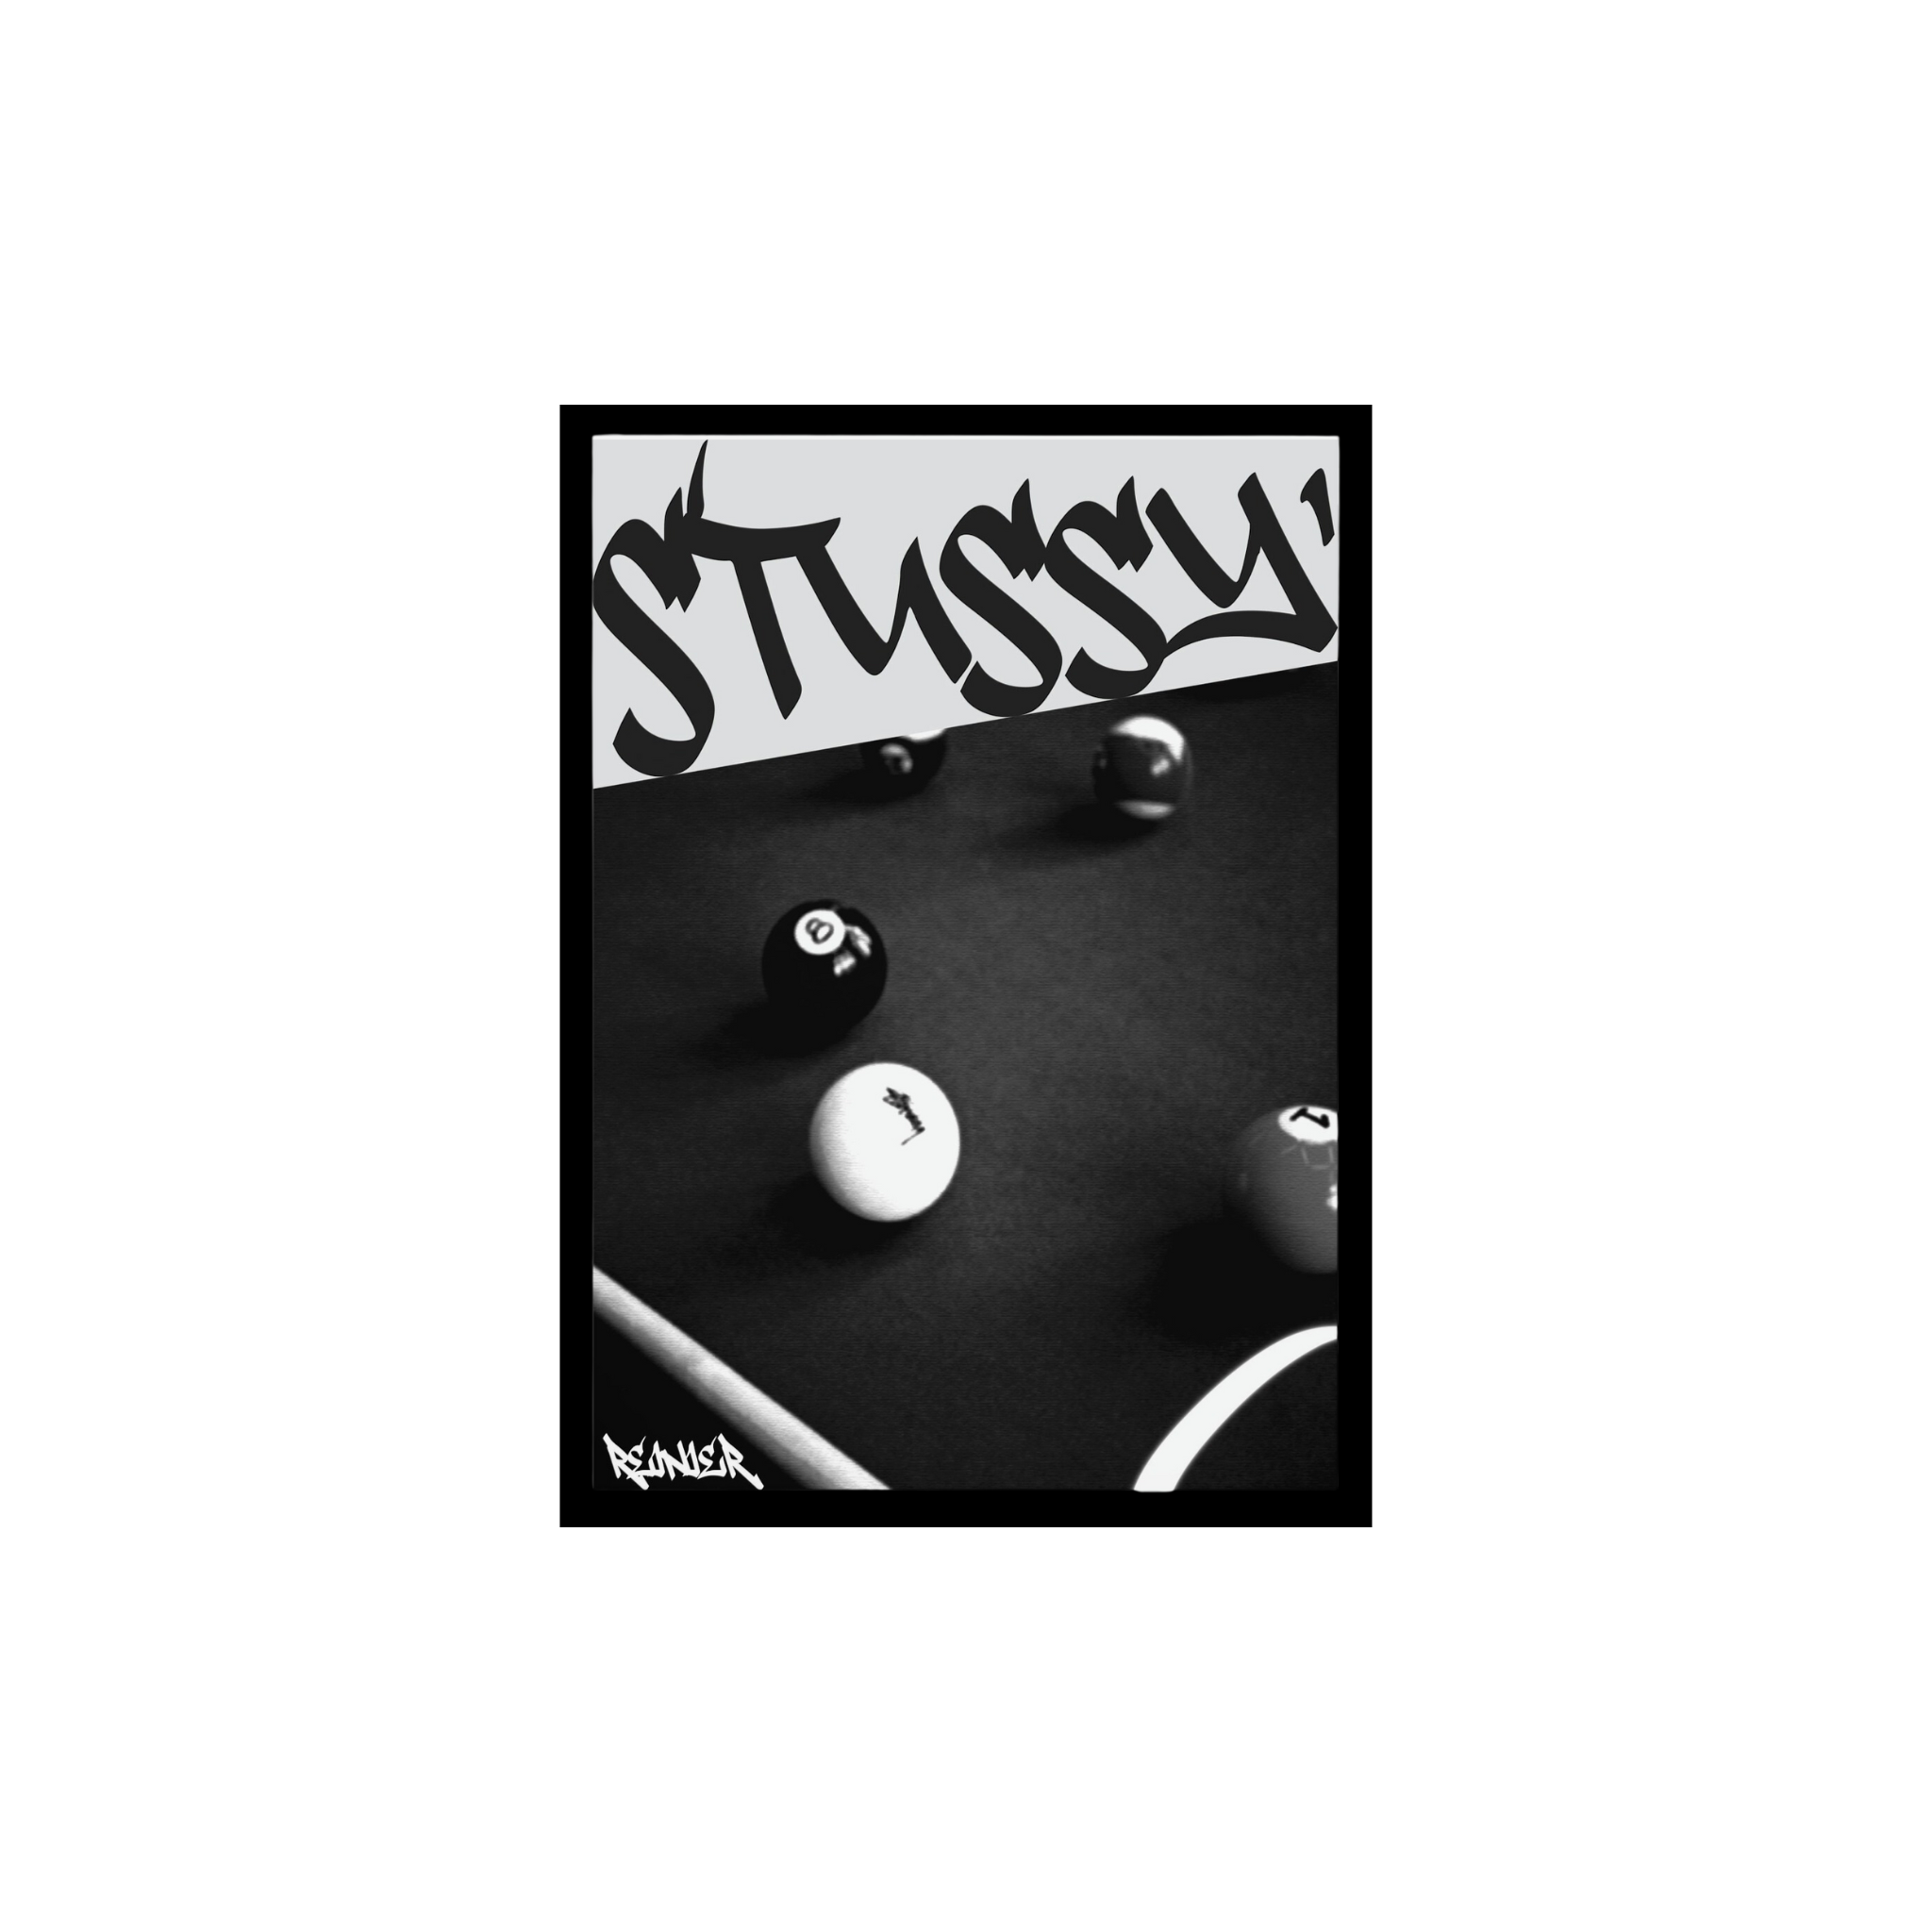 Stussy pool table poster – GhostPost